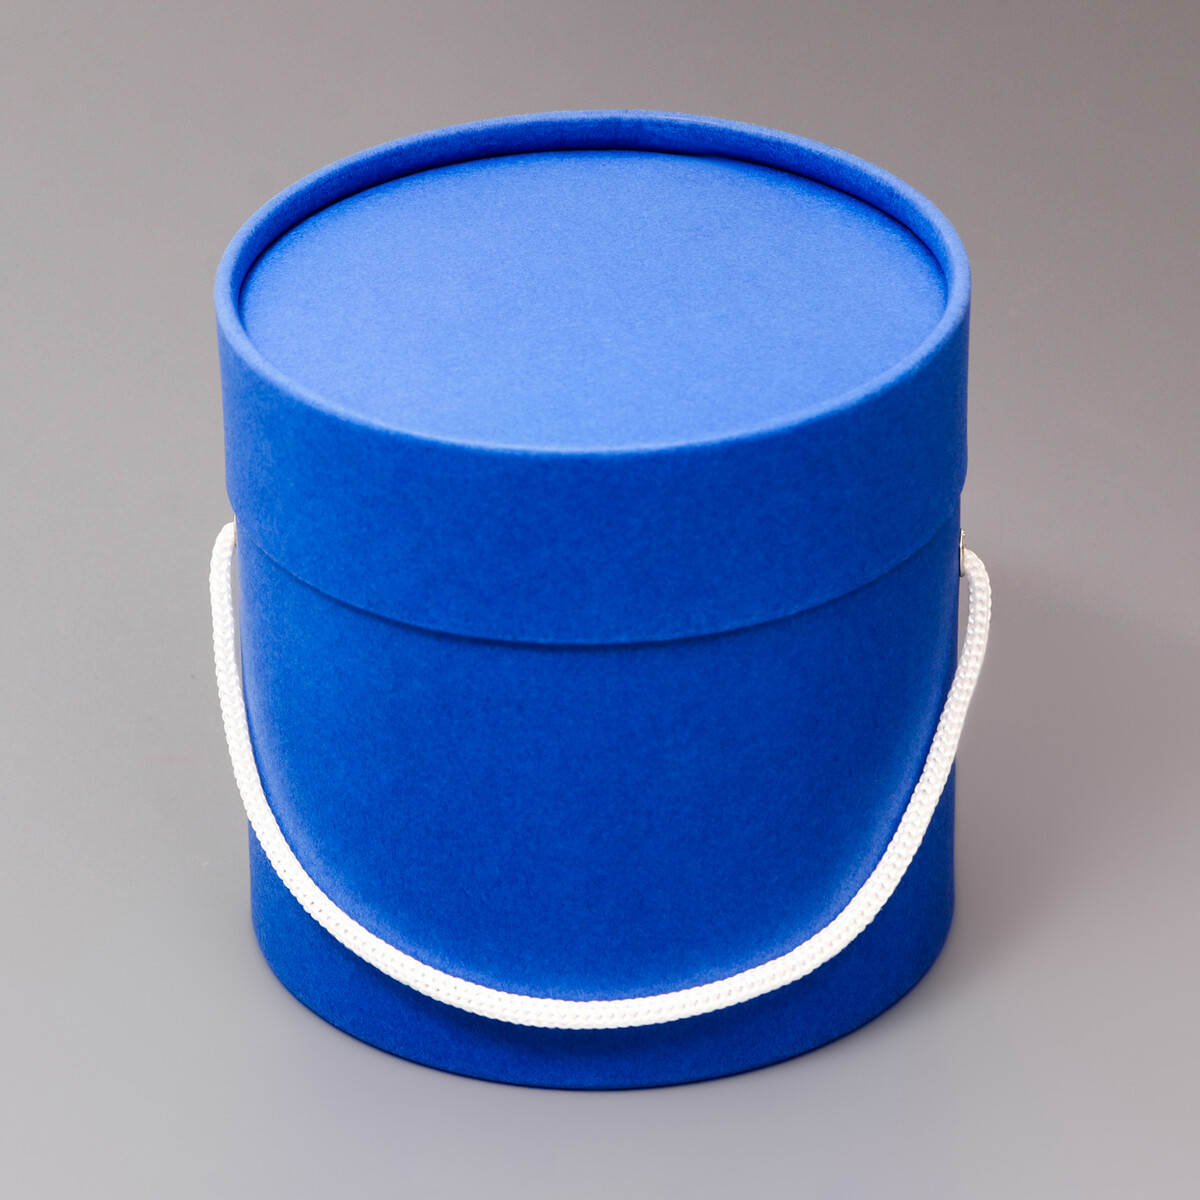 Подарочная коробка, круглая, синяя,с шнурком, 12 х 12 см подарочная коробка круглая